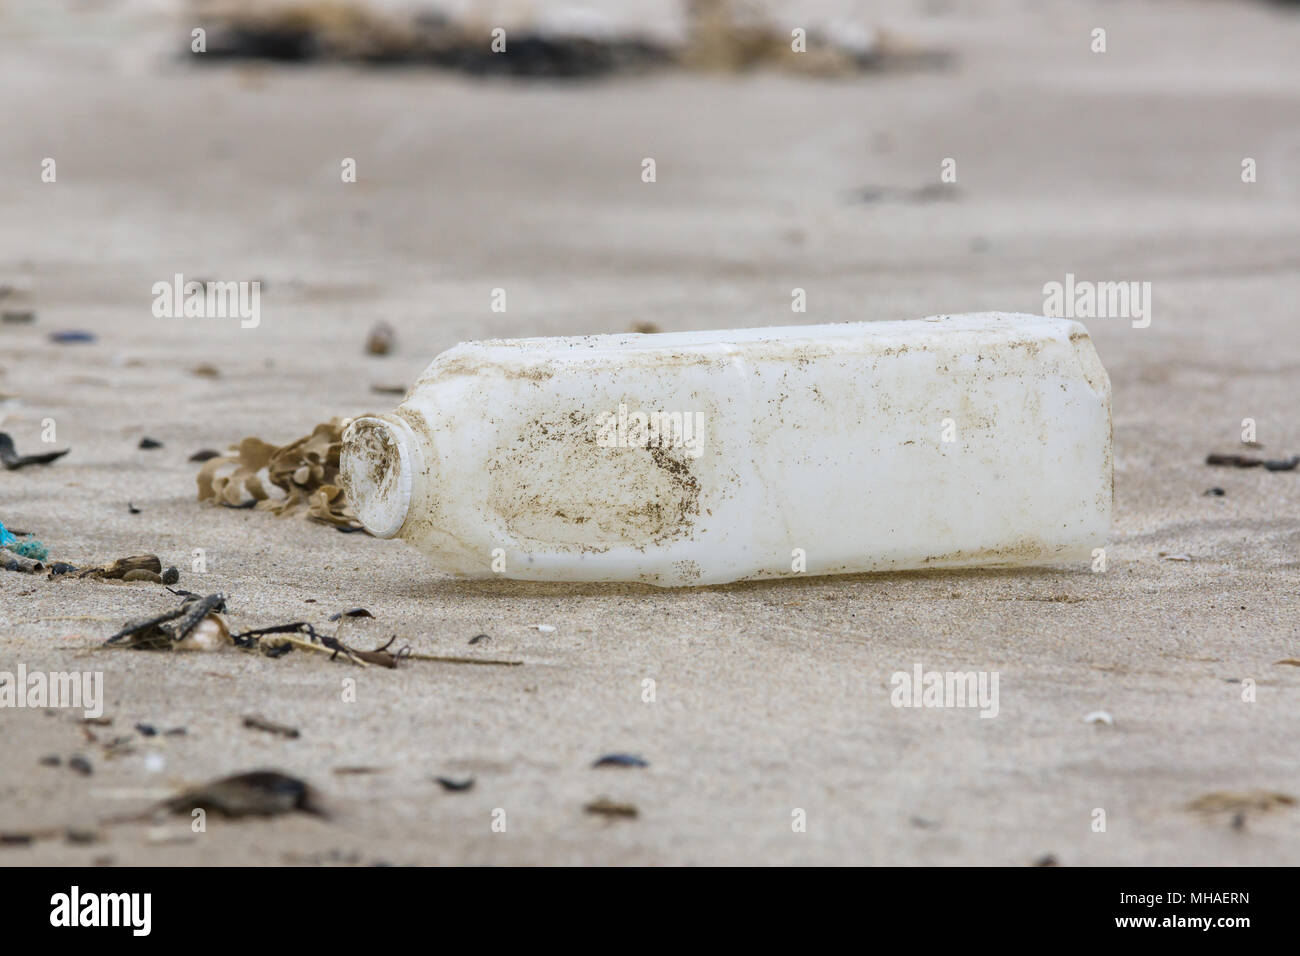 Botella de leche de plástico se lavan en una playa de arena, un ejemplo de las muchas piezas de basura en el mar alrededor del Reino Unido Foto de stock